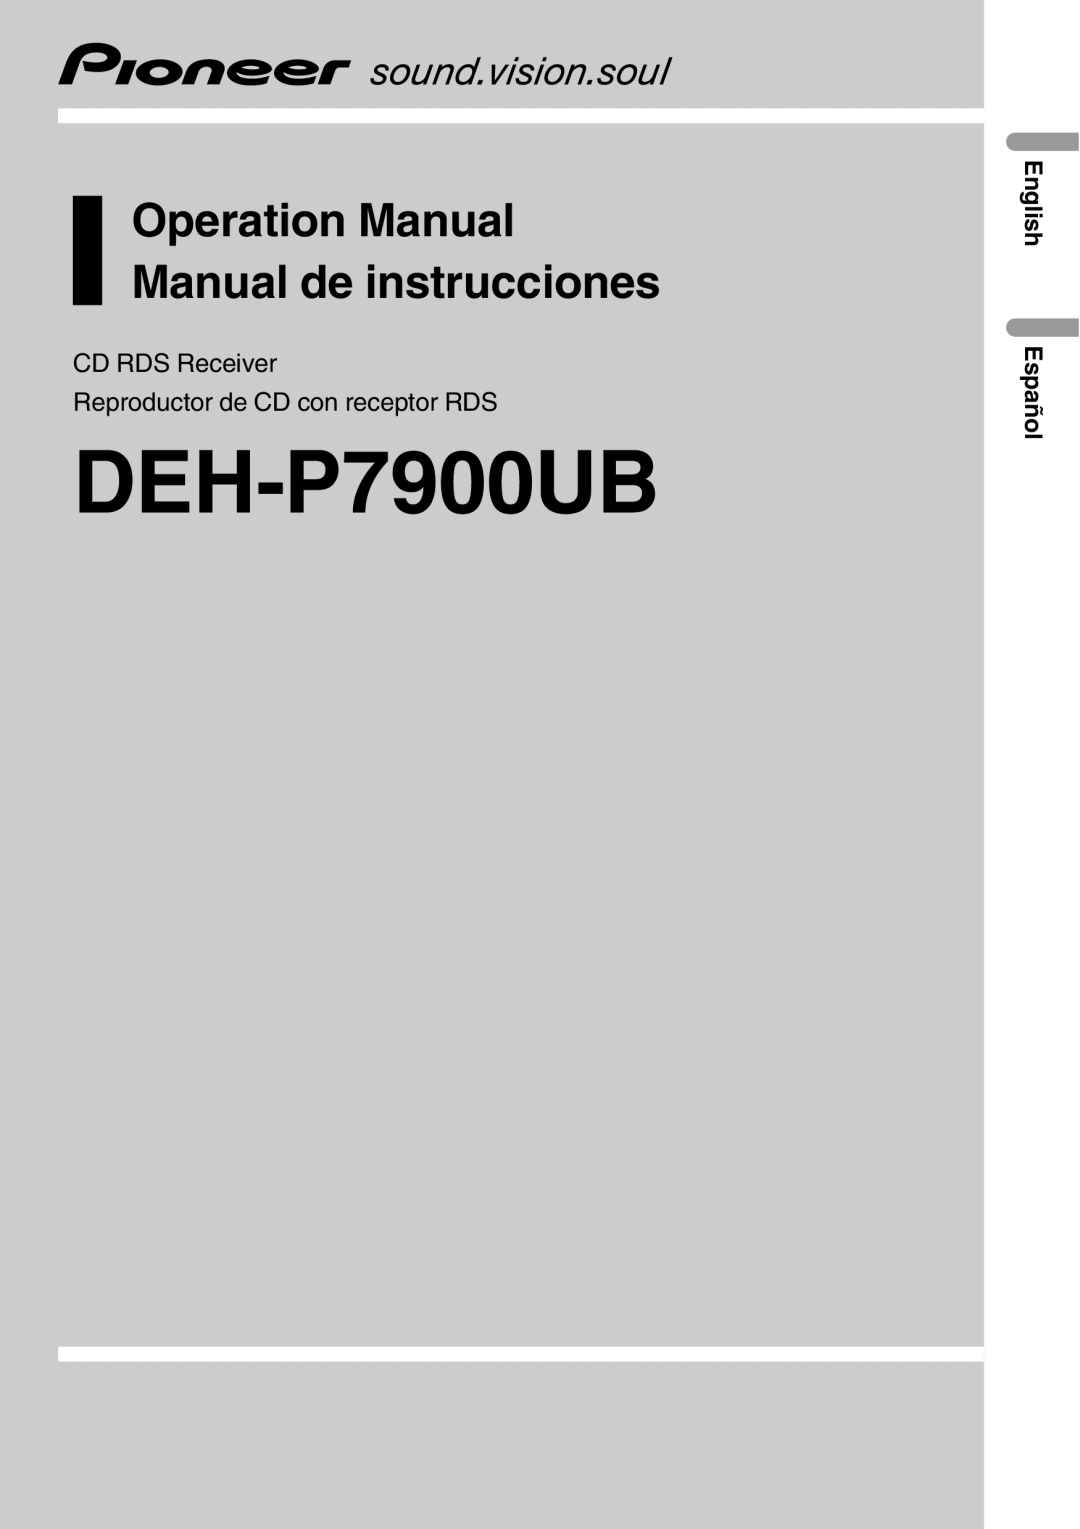 Pioneer DEH-P7900UB operation manual CD RDS Receiver, Reproductor de CD con receptor RDS, English Español 